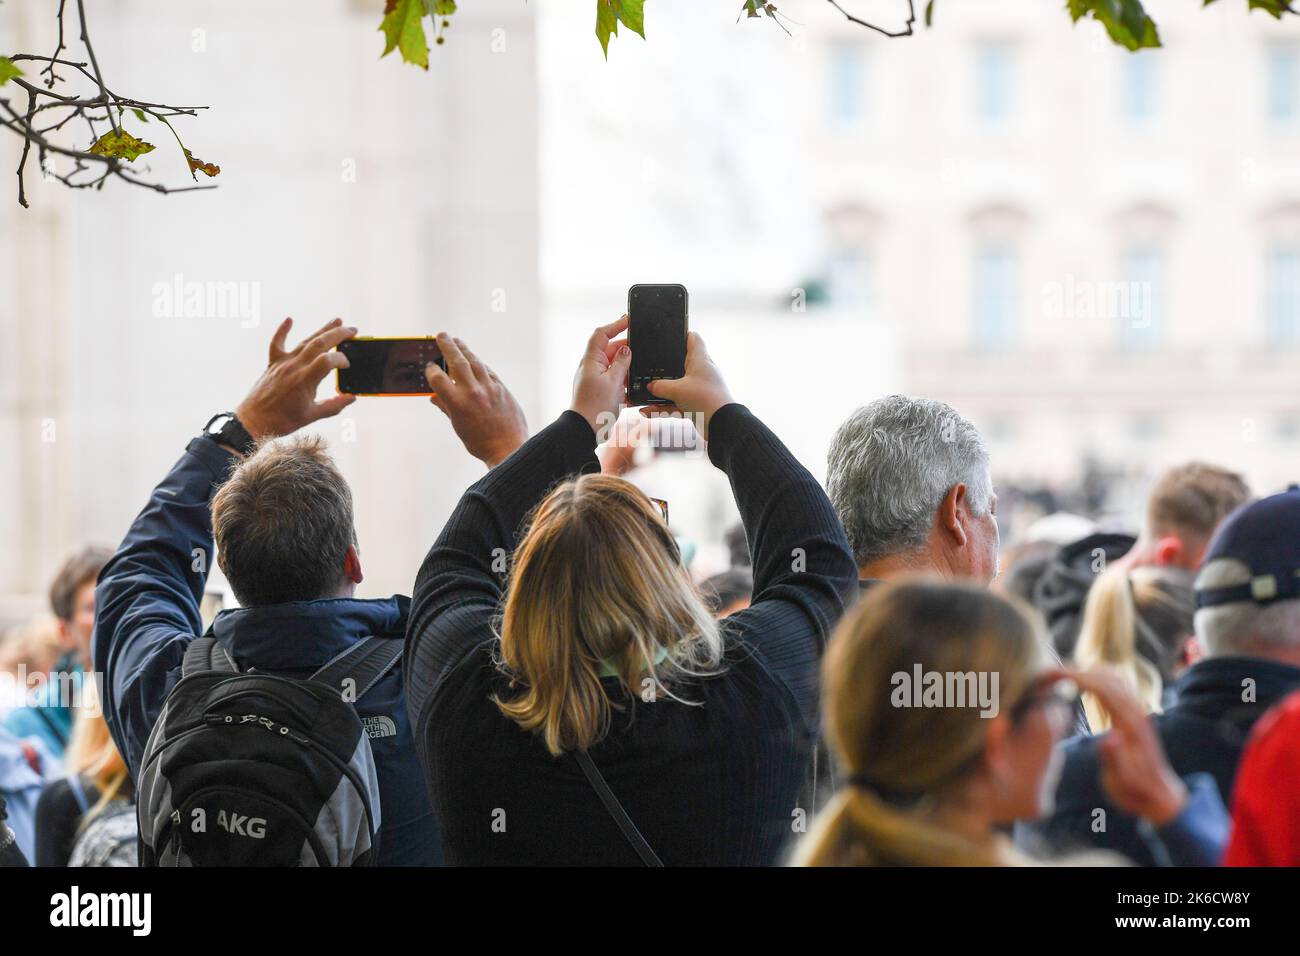 Mitglieder der Öffentlichkeit nehmen Bilder auf ihren Mobiltelefonen auf, während sie darauf warten, dass der Queens Coffin die Mall in Richtung Westminster Hall gebracht wird. Stockfoto